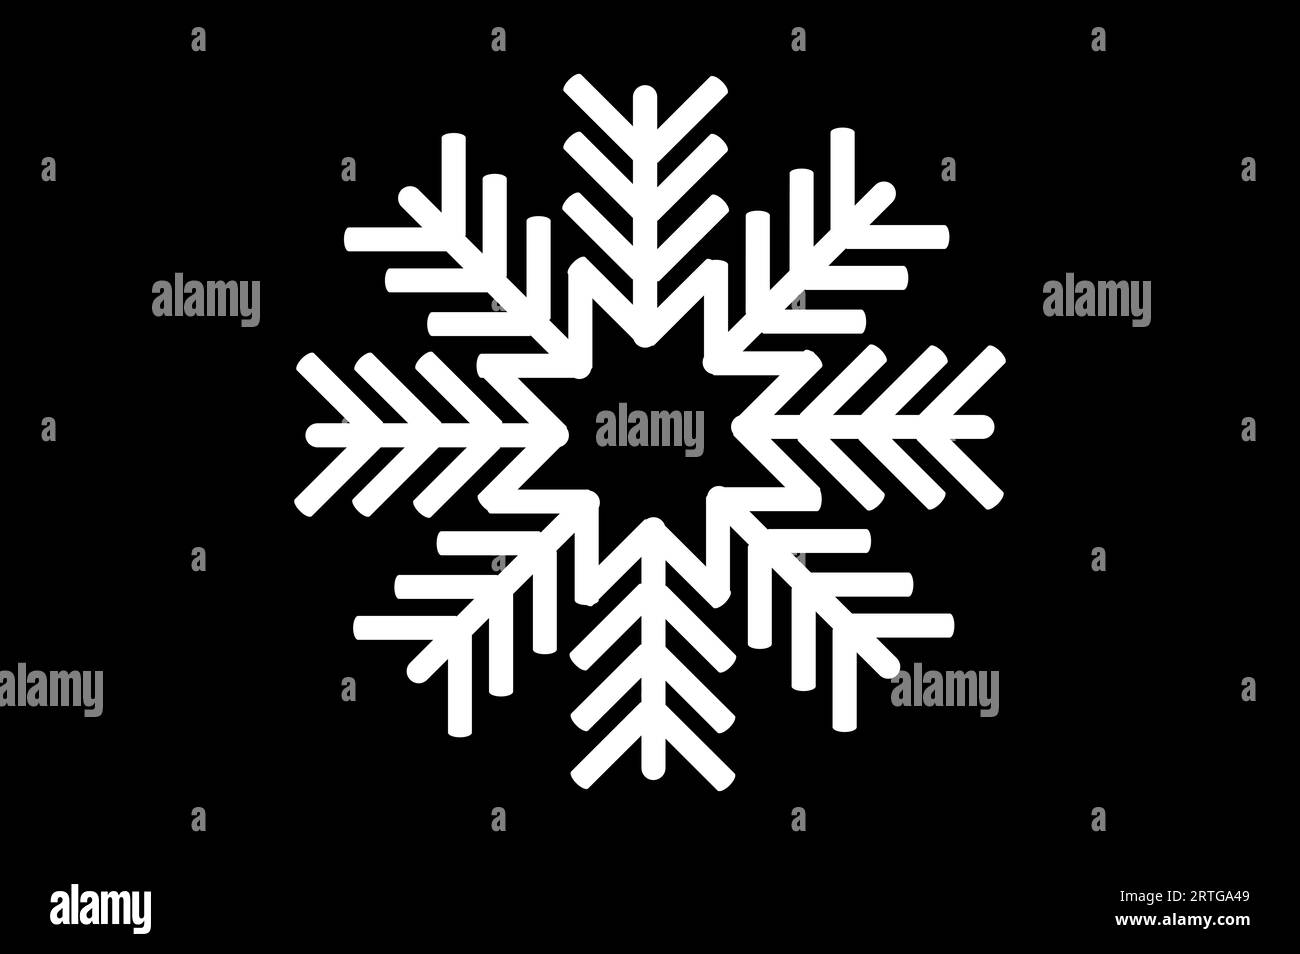 Pictogramme de neige blanche sur fond noir Banque D'Images